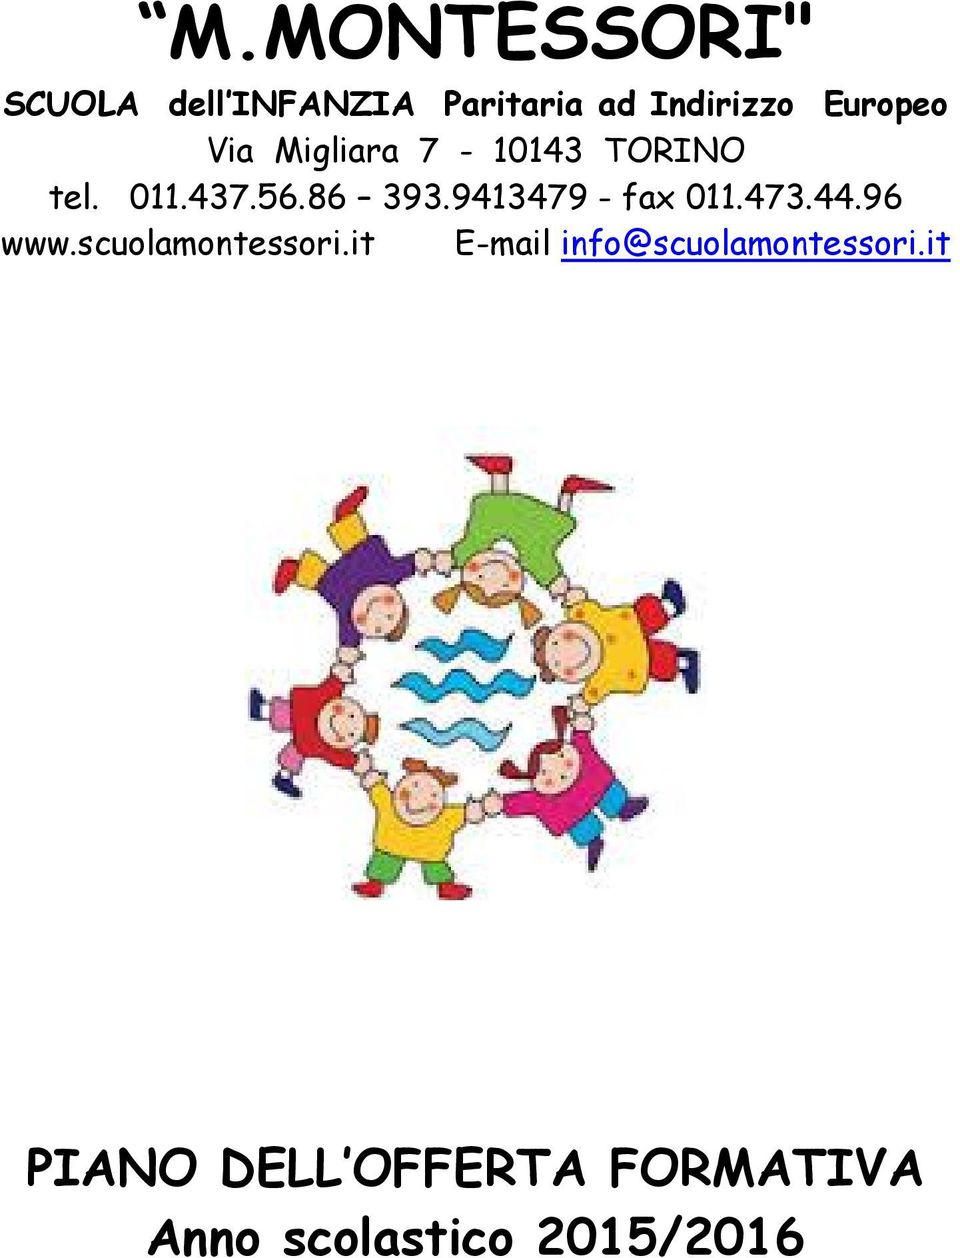 9413479 - fax 011.473.44.96 www.scuolamontessori.